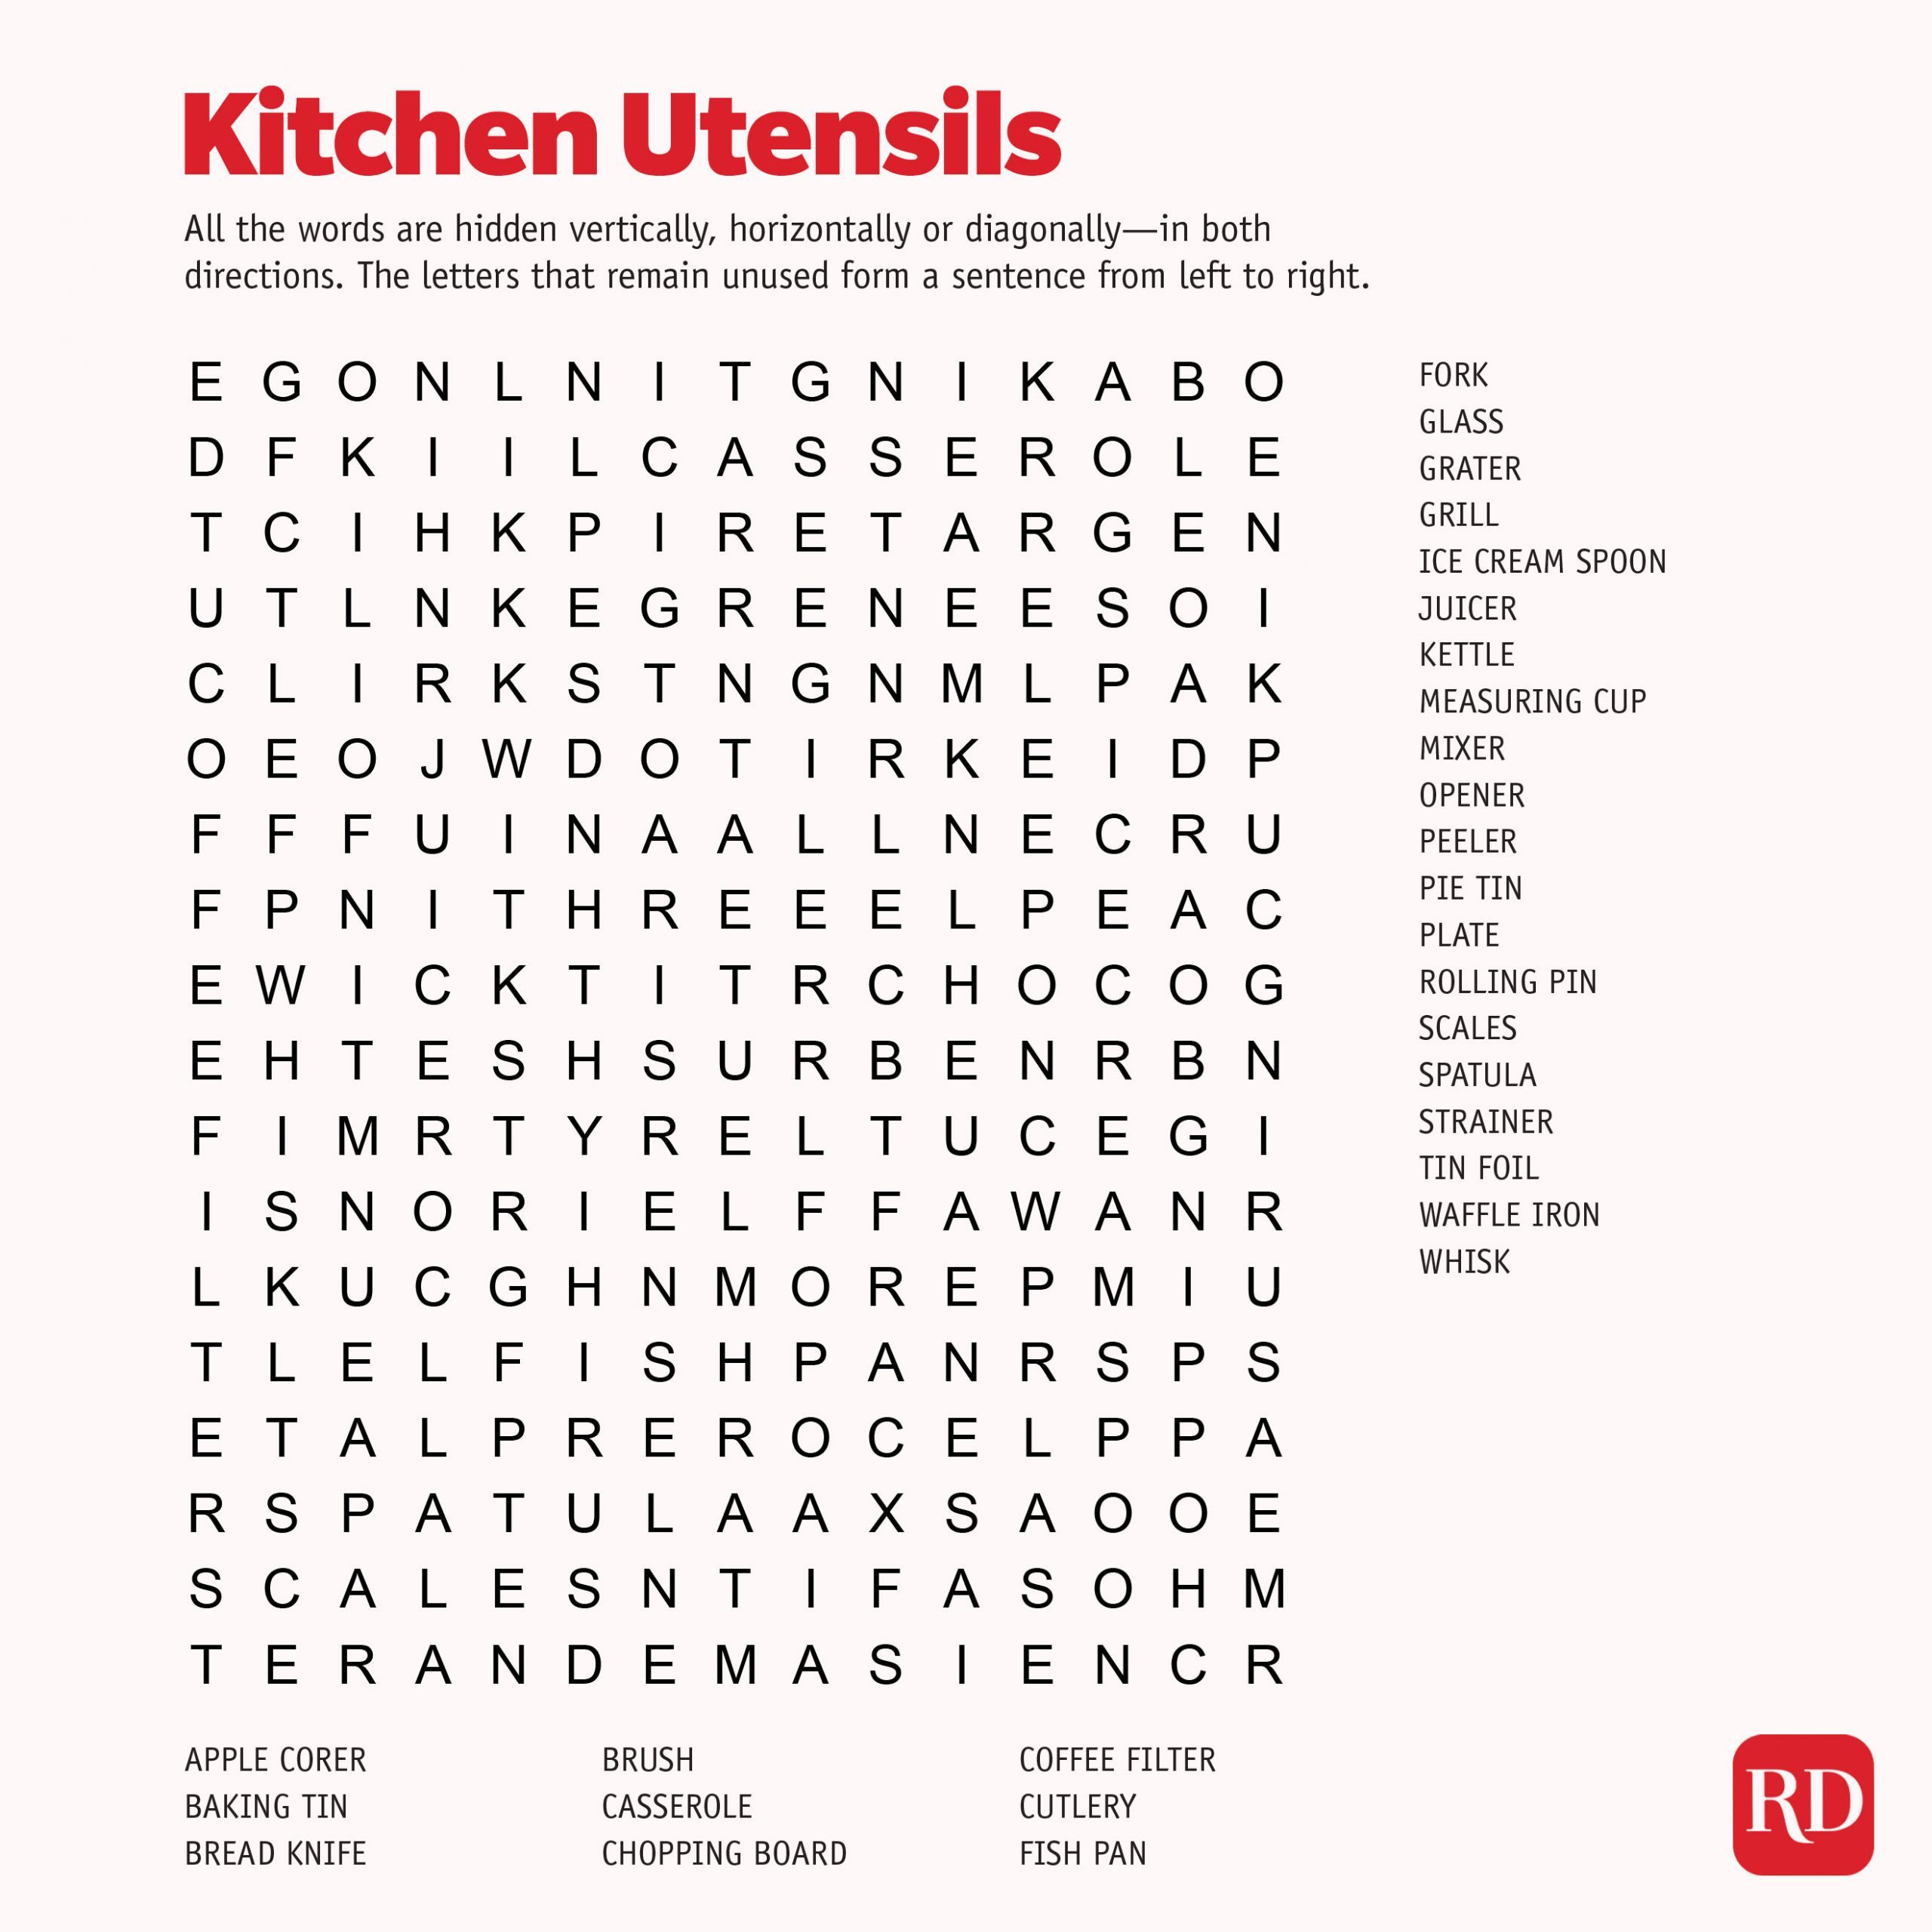 Kitchen utensils Word search